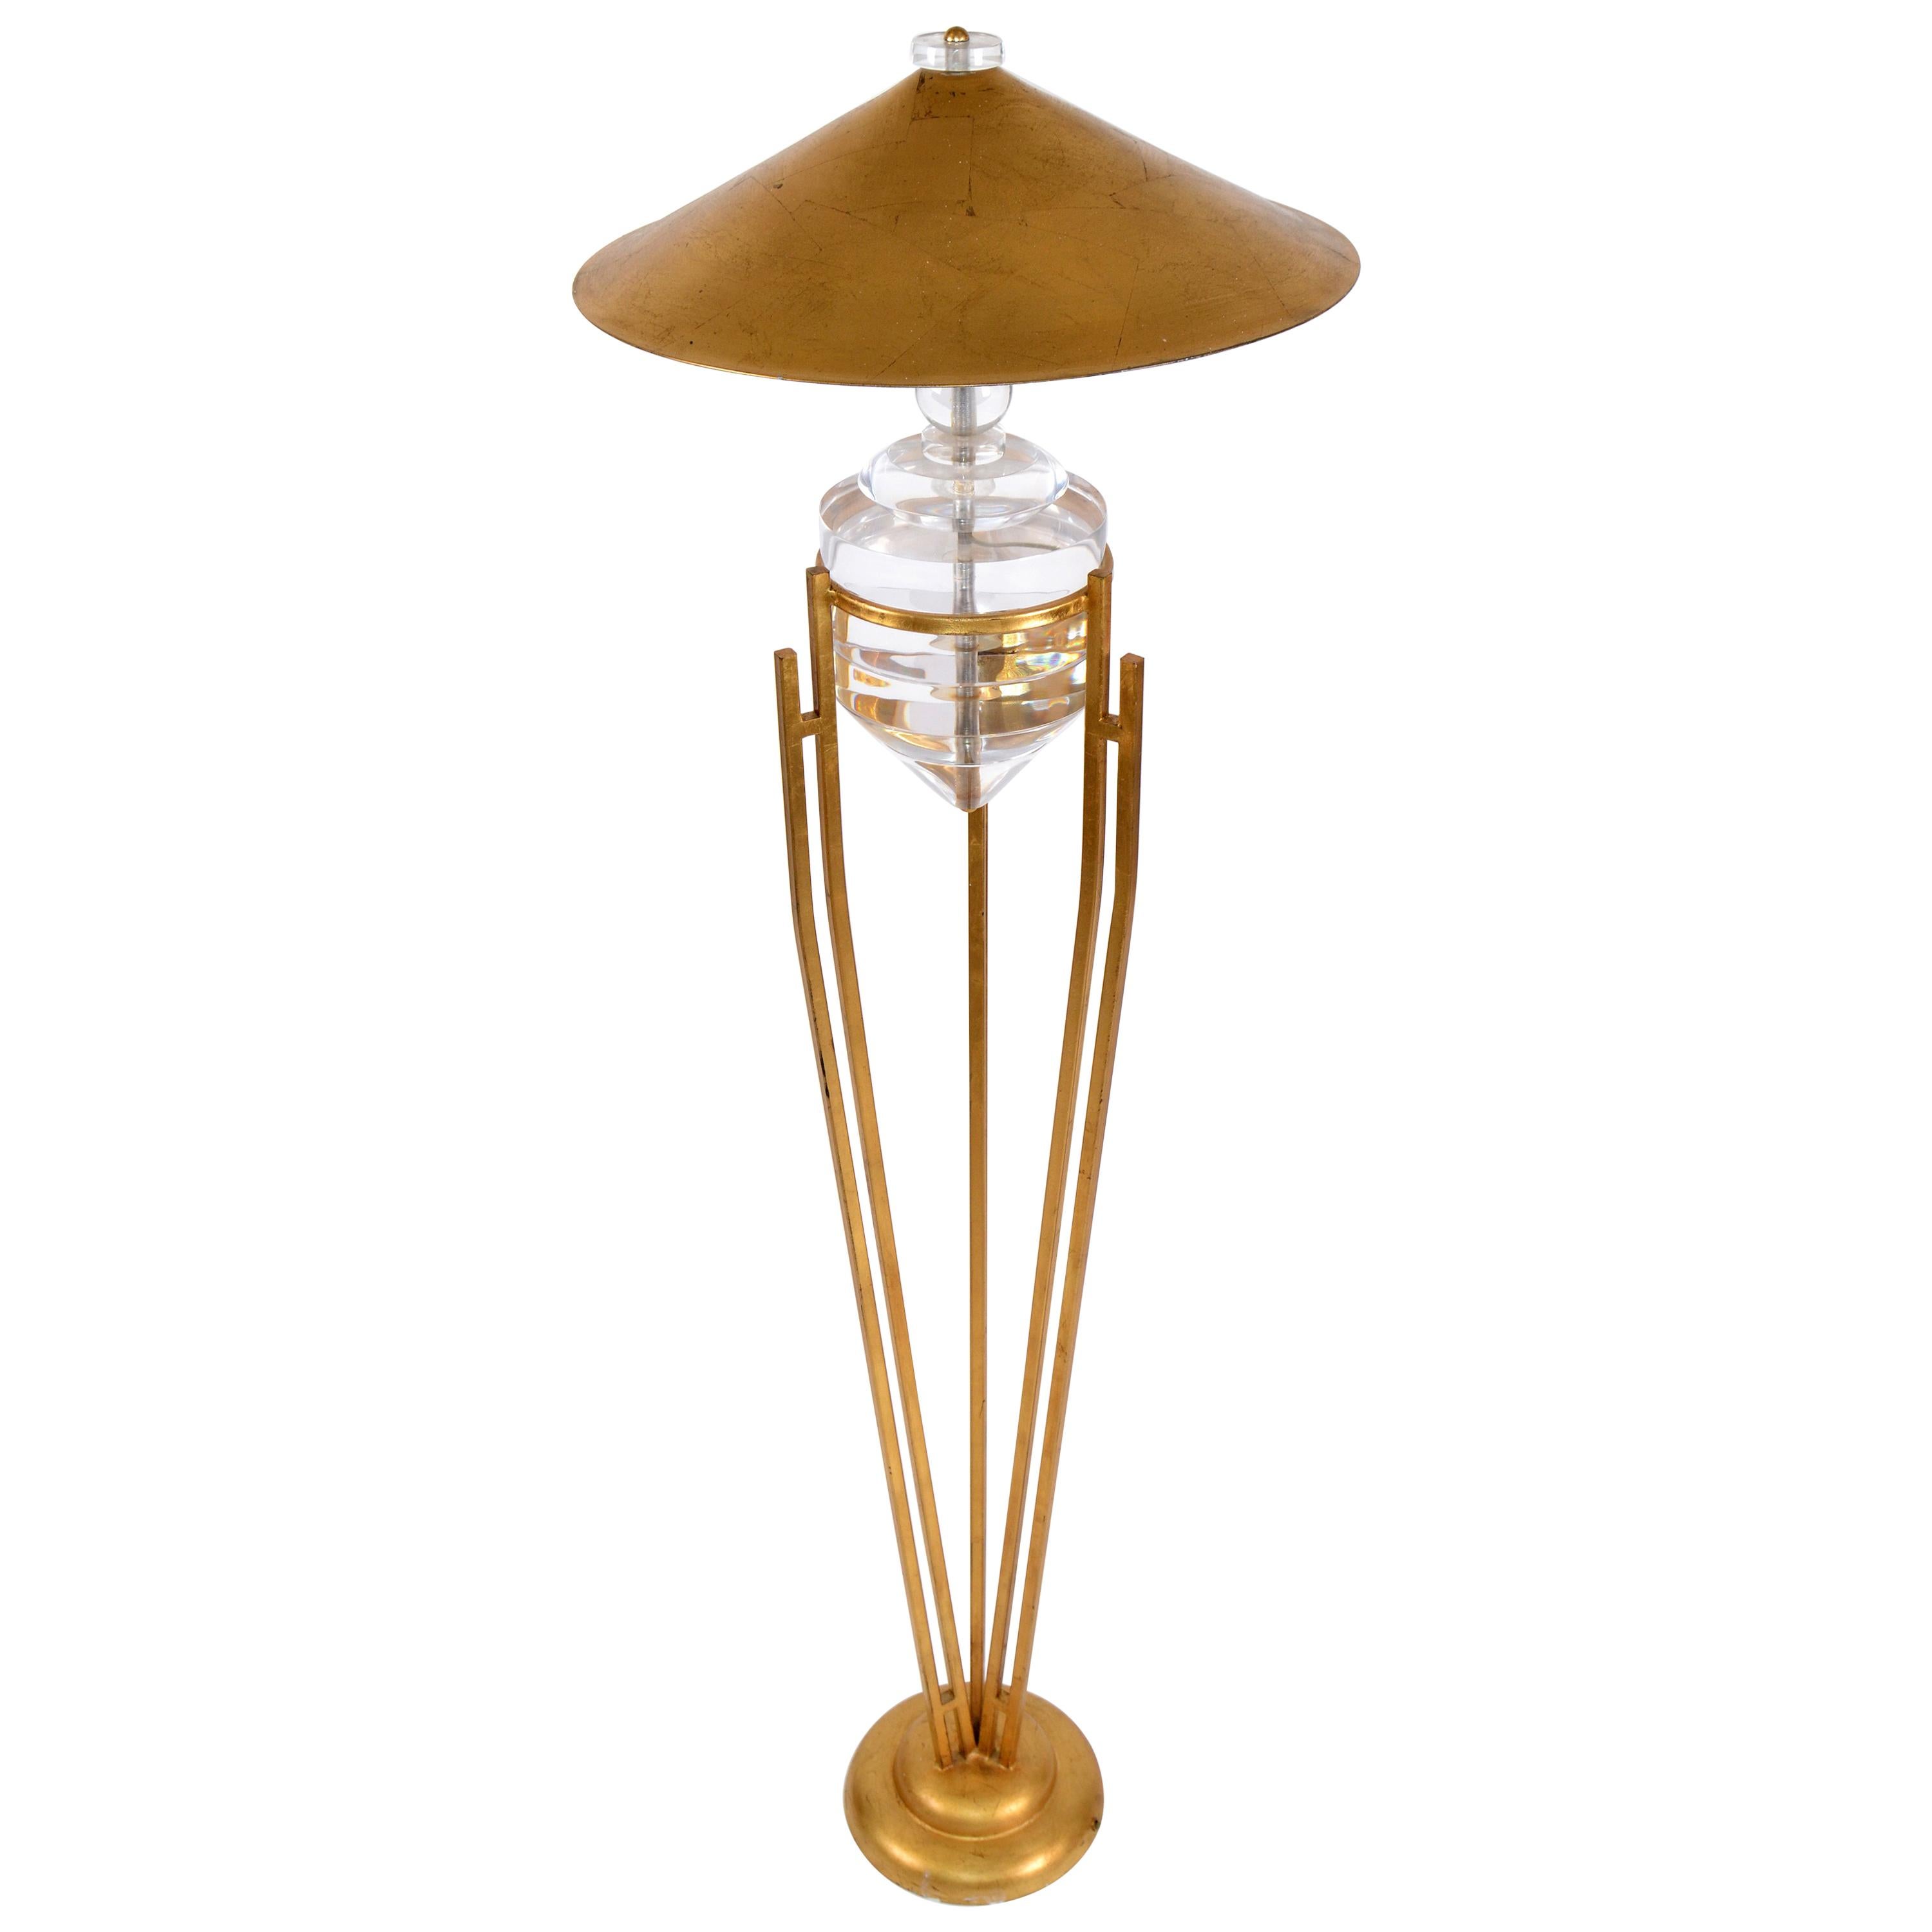 Art Deco Stil Messing Metall und gestapelt Lucite Modul Stehlampe goldenen Schirm